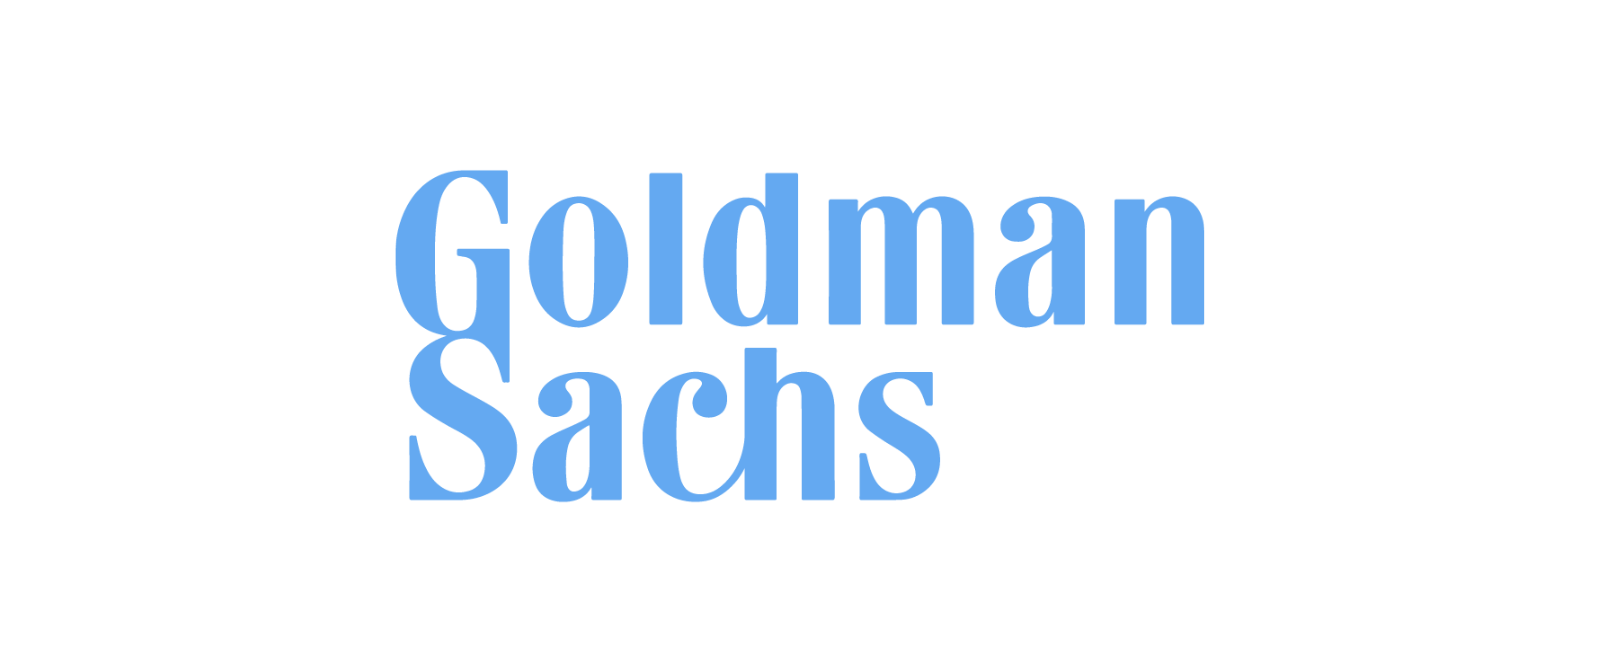 Goldman Sachs .png